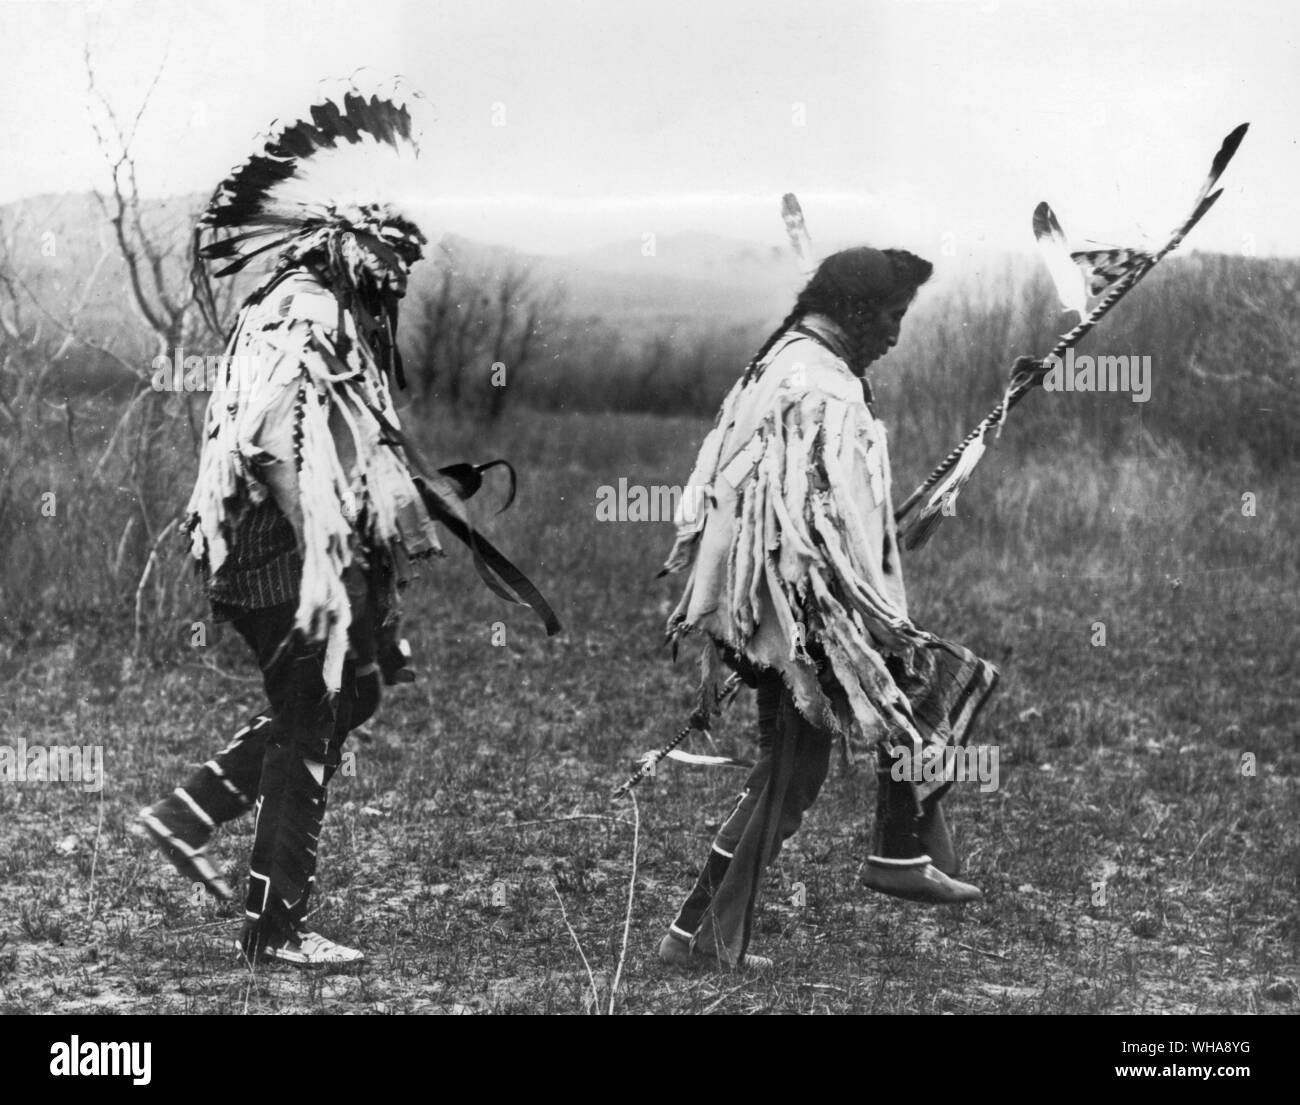 Ansicht des Chief Medizin Krähe, die den Tanz. Krähe. Montana. Medizin Krähe war ein Krieger aus der Zeit, als er zum ersten Mal auf dem Kriegspfad im Alter von 15 Jahren bis zu seinem letzten Kampf im Jahr 1877 ging. Er chieftaincy ca. 1870 im Alter von 20 Jahren erreicht - zwei, und ab dann er das Tempo für angehende junge Krieger seines Volkes. Bis zu seinem Tod im Jahre 1920, im Alter von 72, er war eine Reservierung Chief, die sich mit Hilfe der Krähe Stamm erfahren Sie in den Wegen des weißen Mannes, der so schnell und so effizient wie möglich zu leben. Er ging zu sehen, der Große Vater in Washington viele Male im Namen seiner Stockfoto